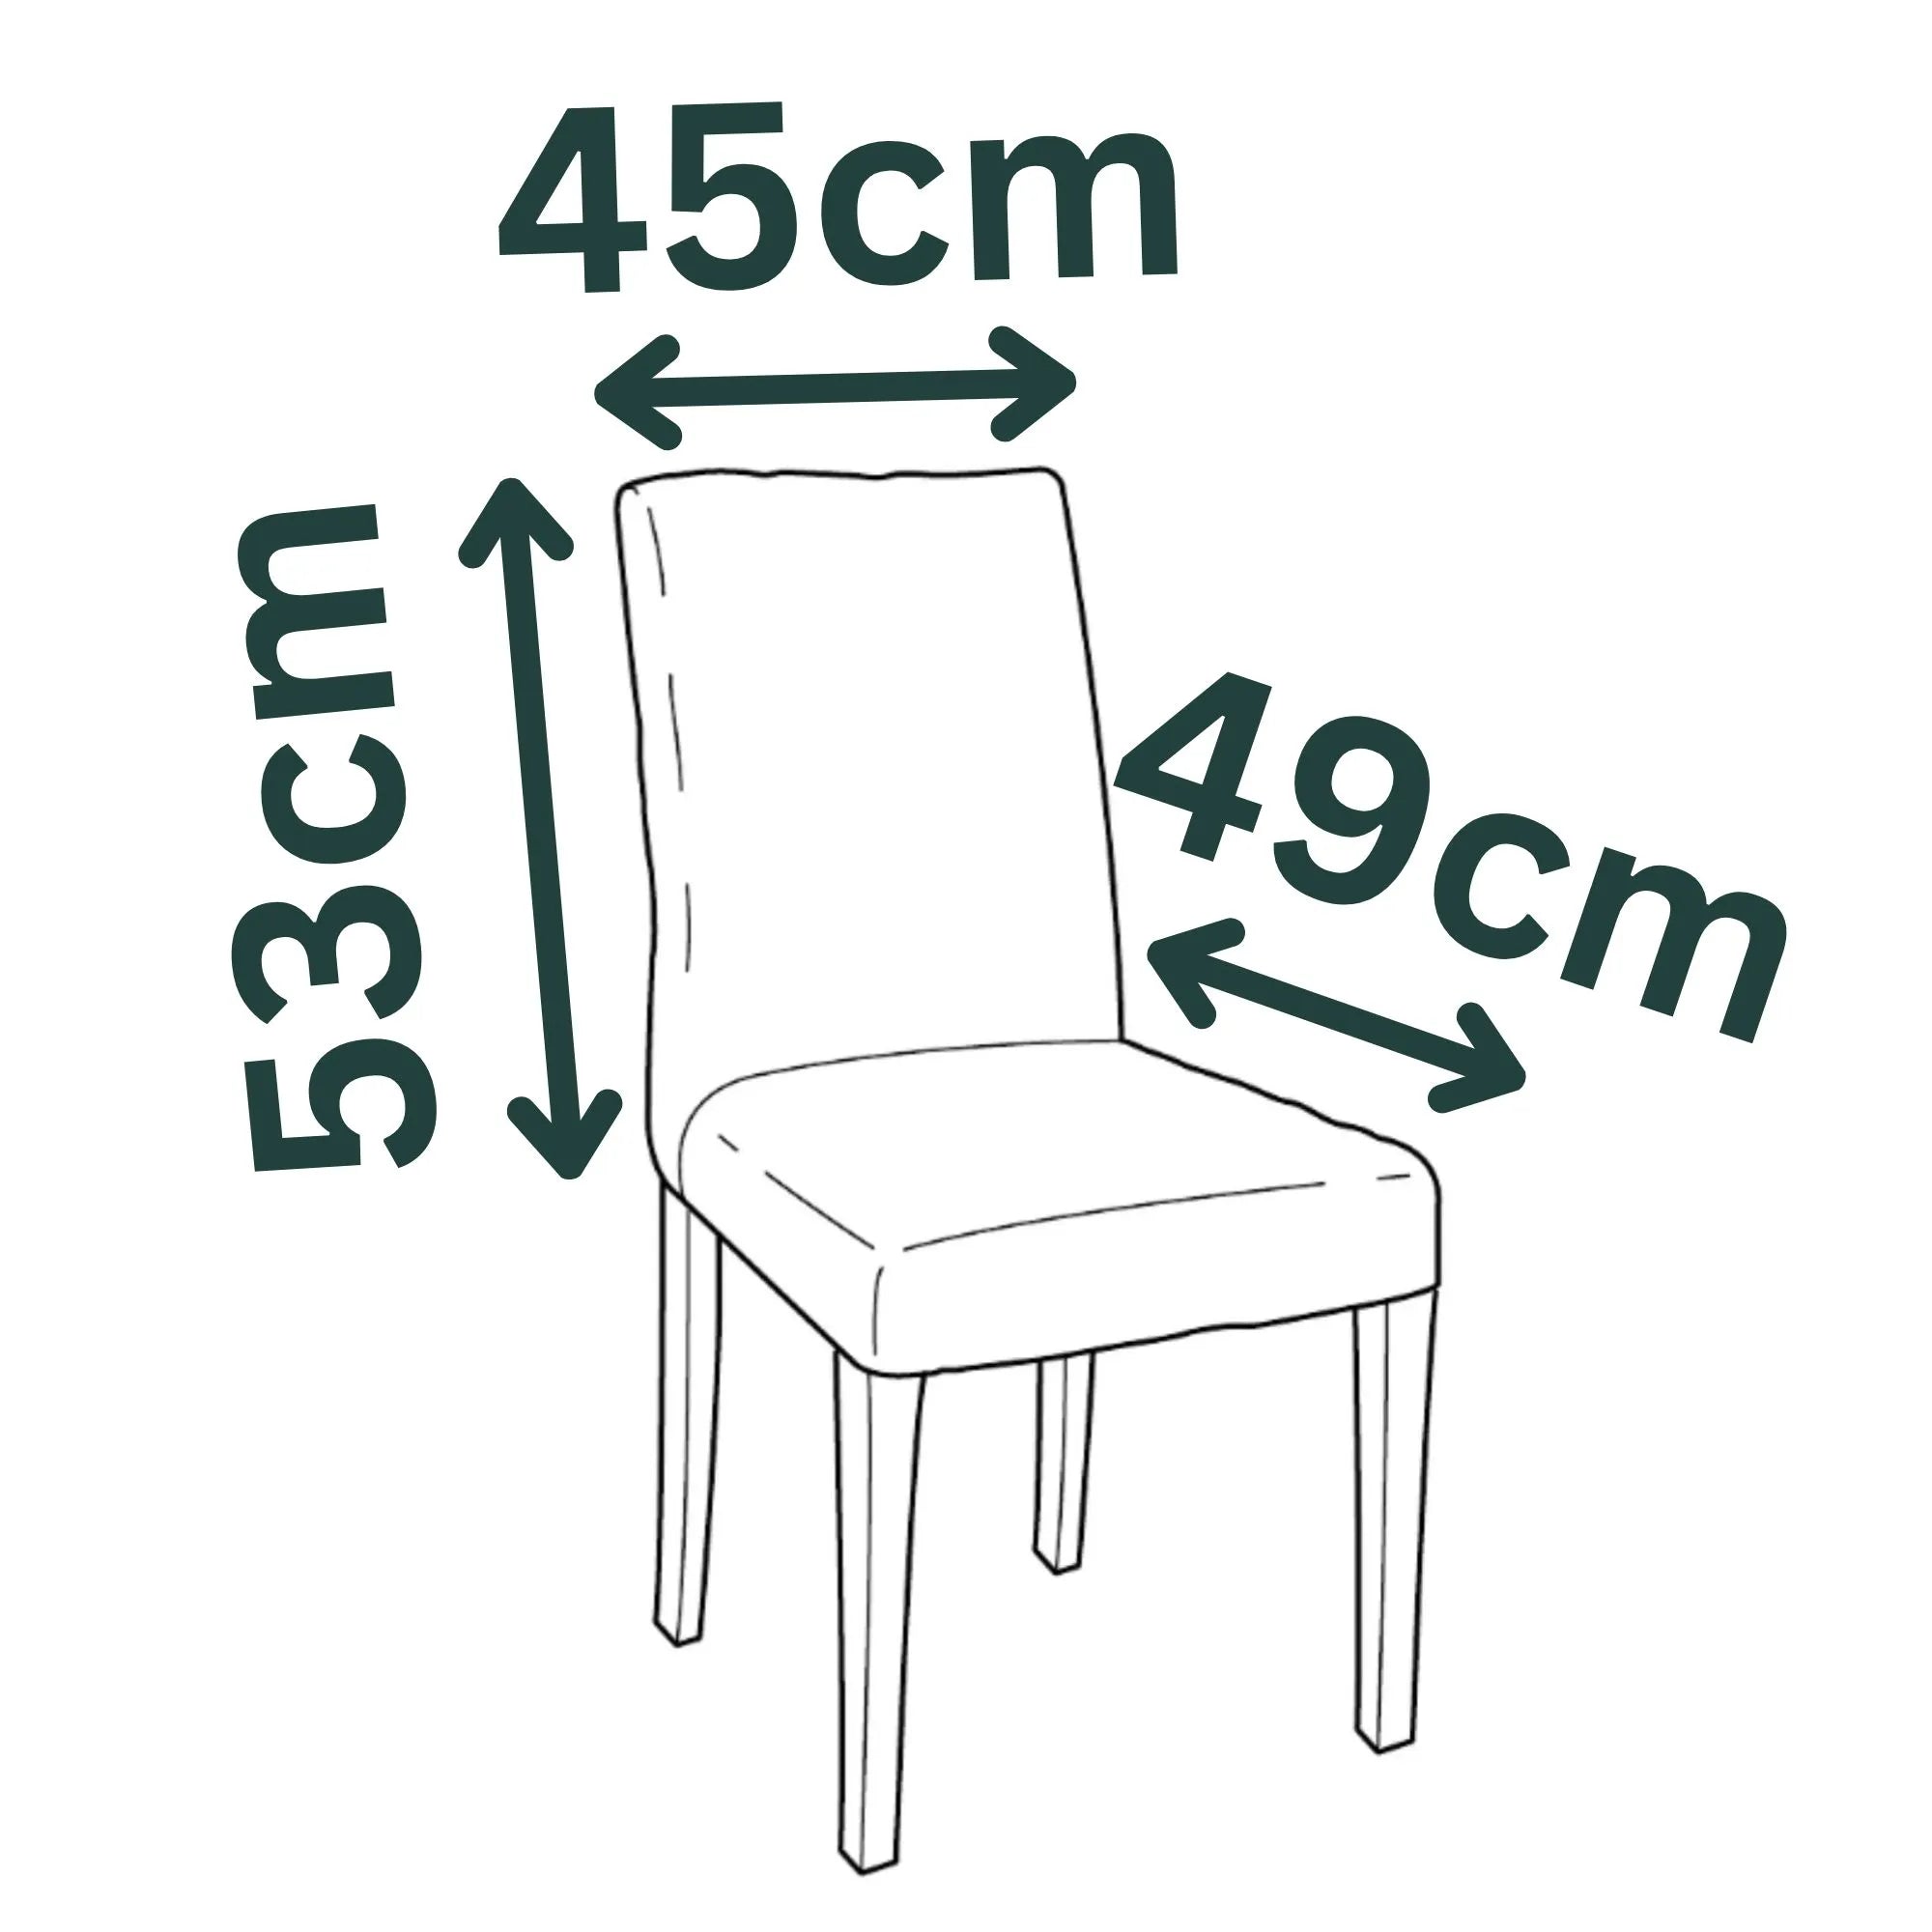 HENRIKSDAL IKEA Chair Long Skirt Cover - Larger Size Model